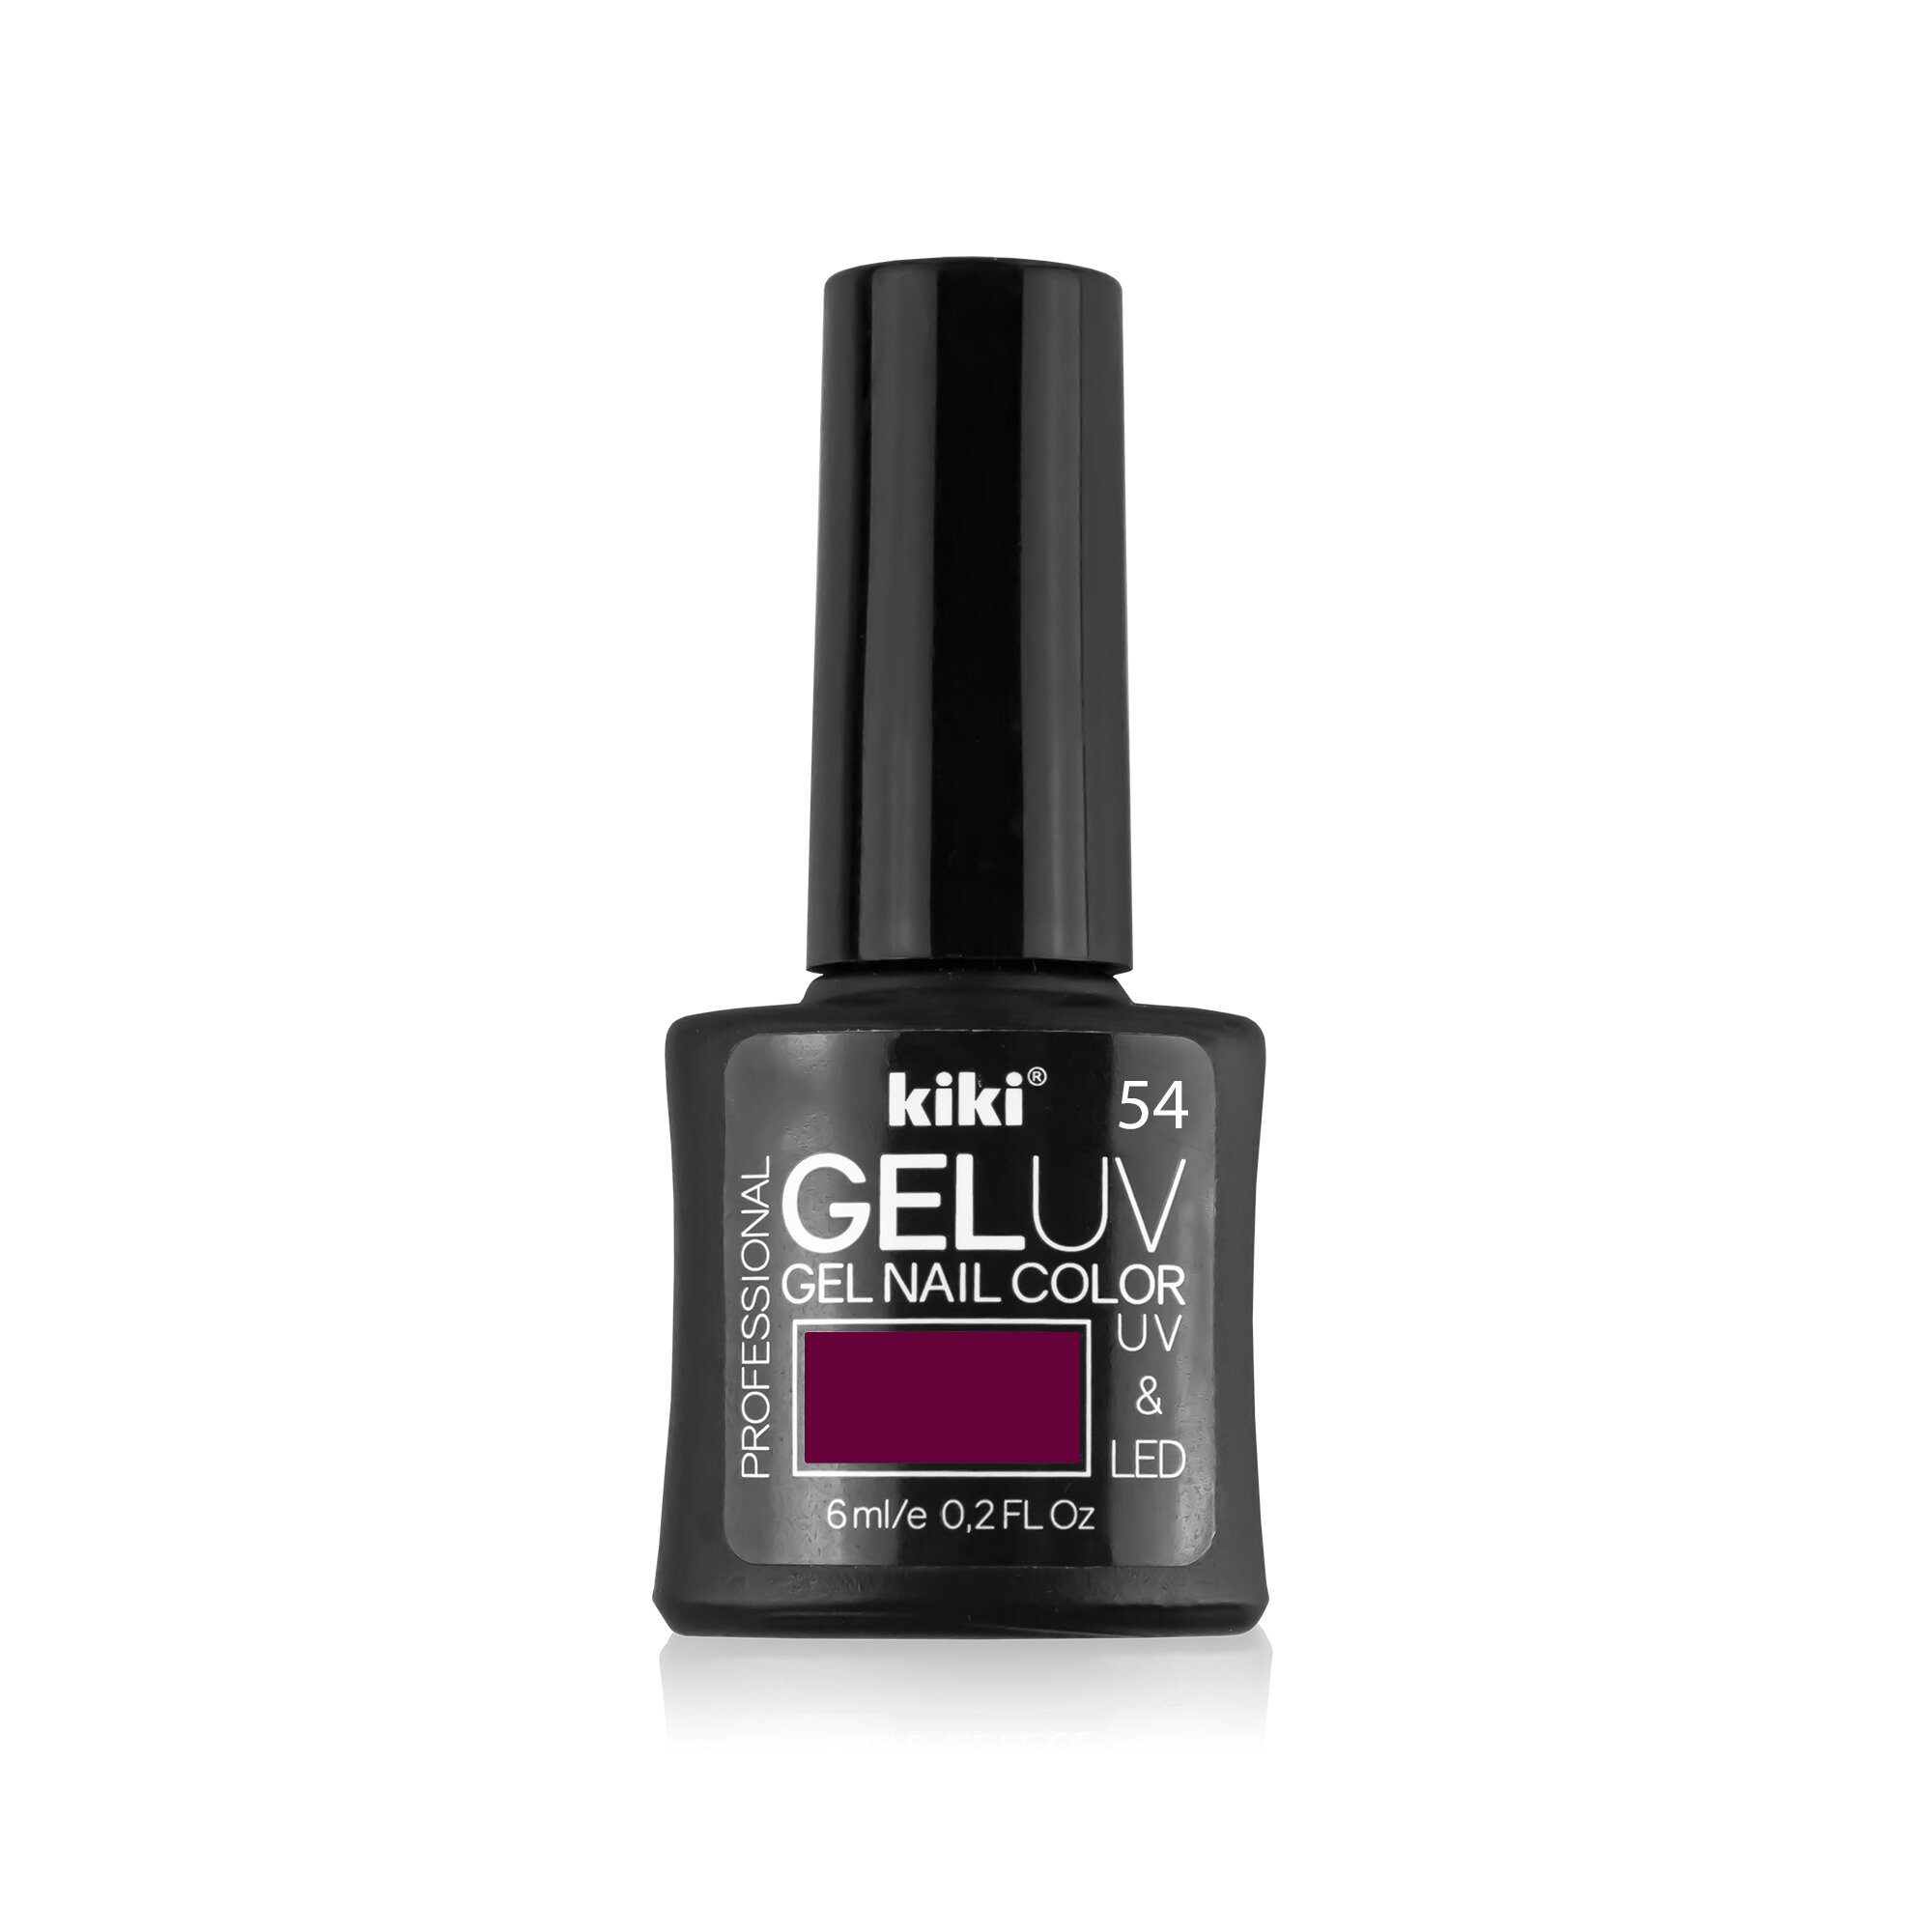 Гель-лак для ногтей KIKI оттенок 54 GEL UV&LED, сливовый, 6 мл